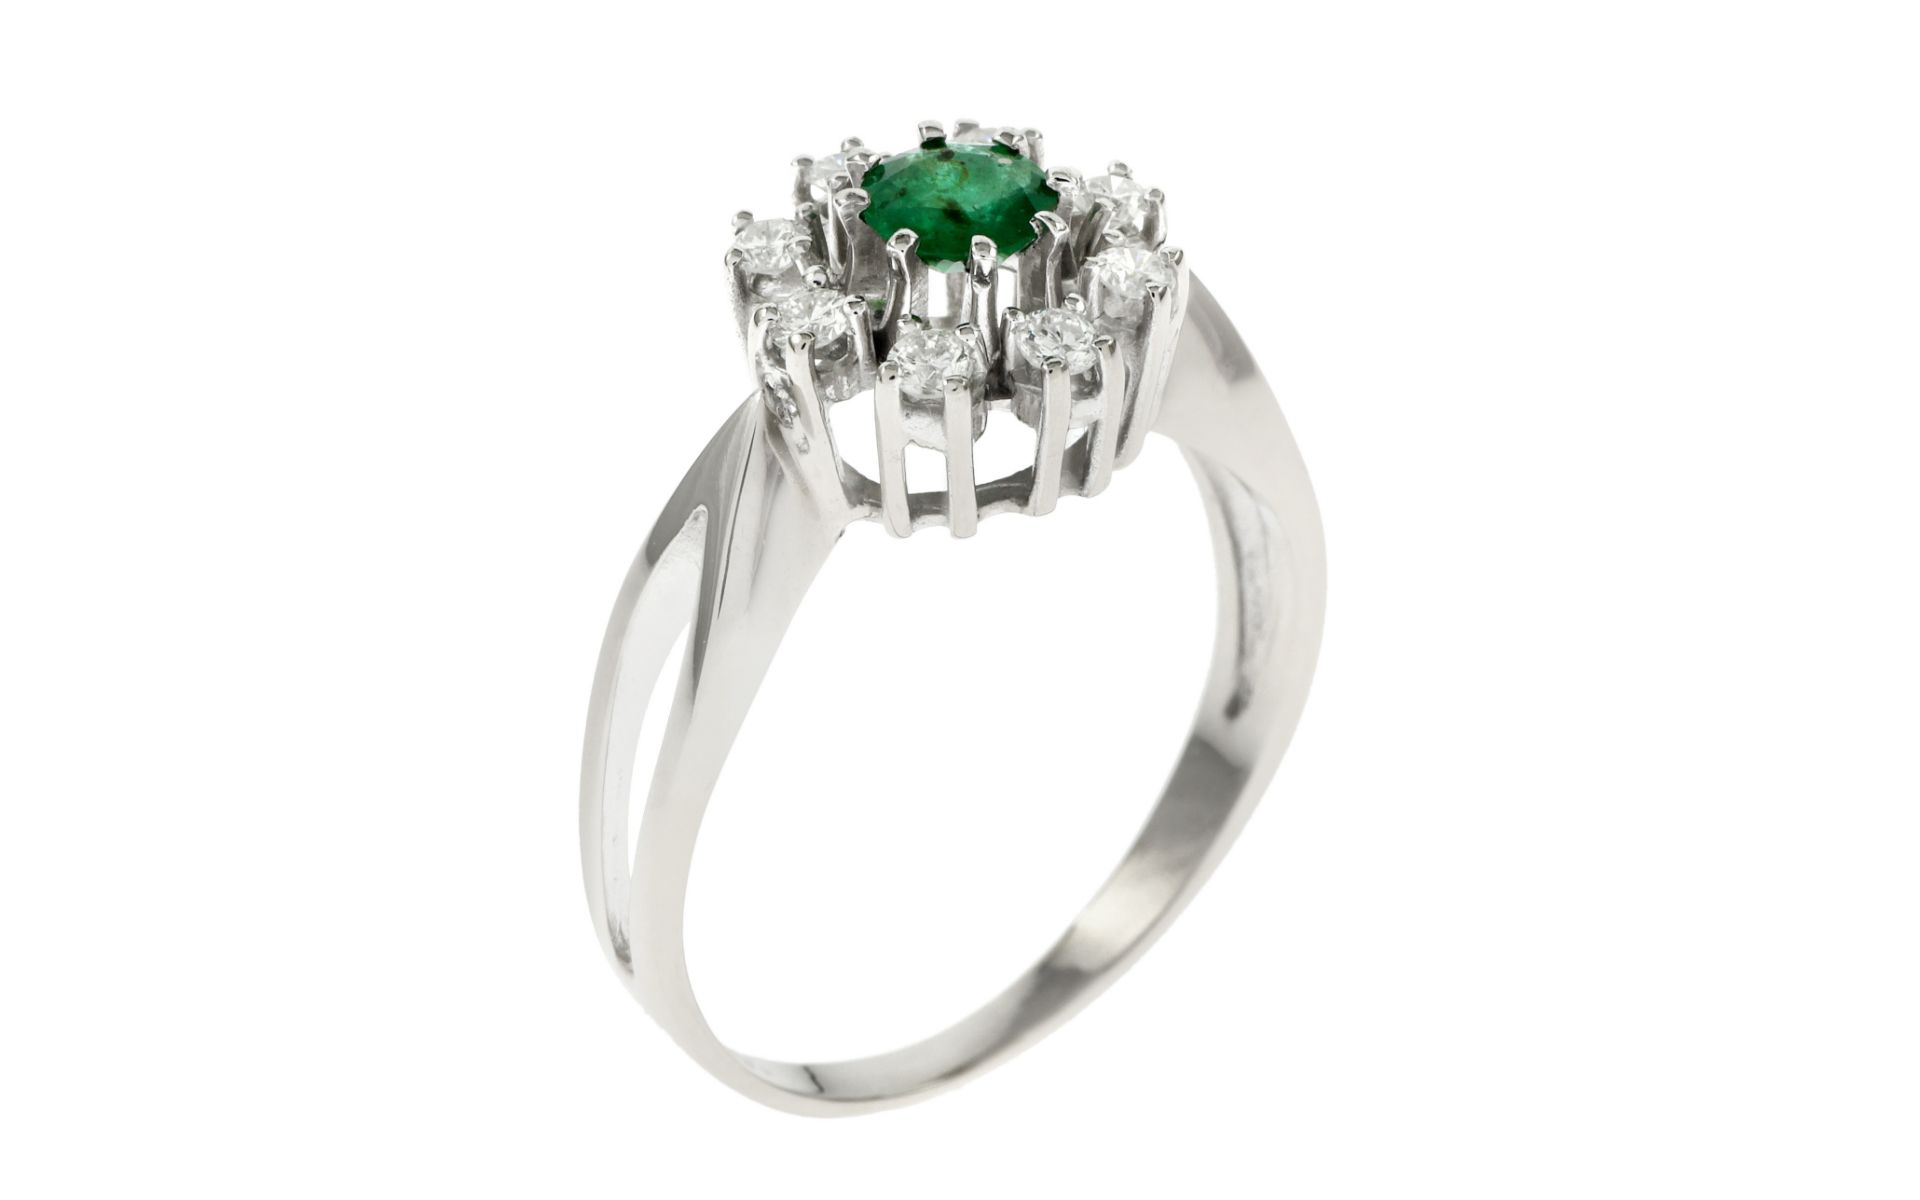 Ring 3.03 g 585/- Weissgold mit Diamanten und Smaragd. 8 Diamanten zus. ca. 0.16 ct.. Ringgroesse ca